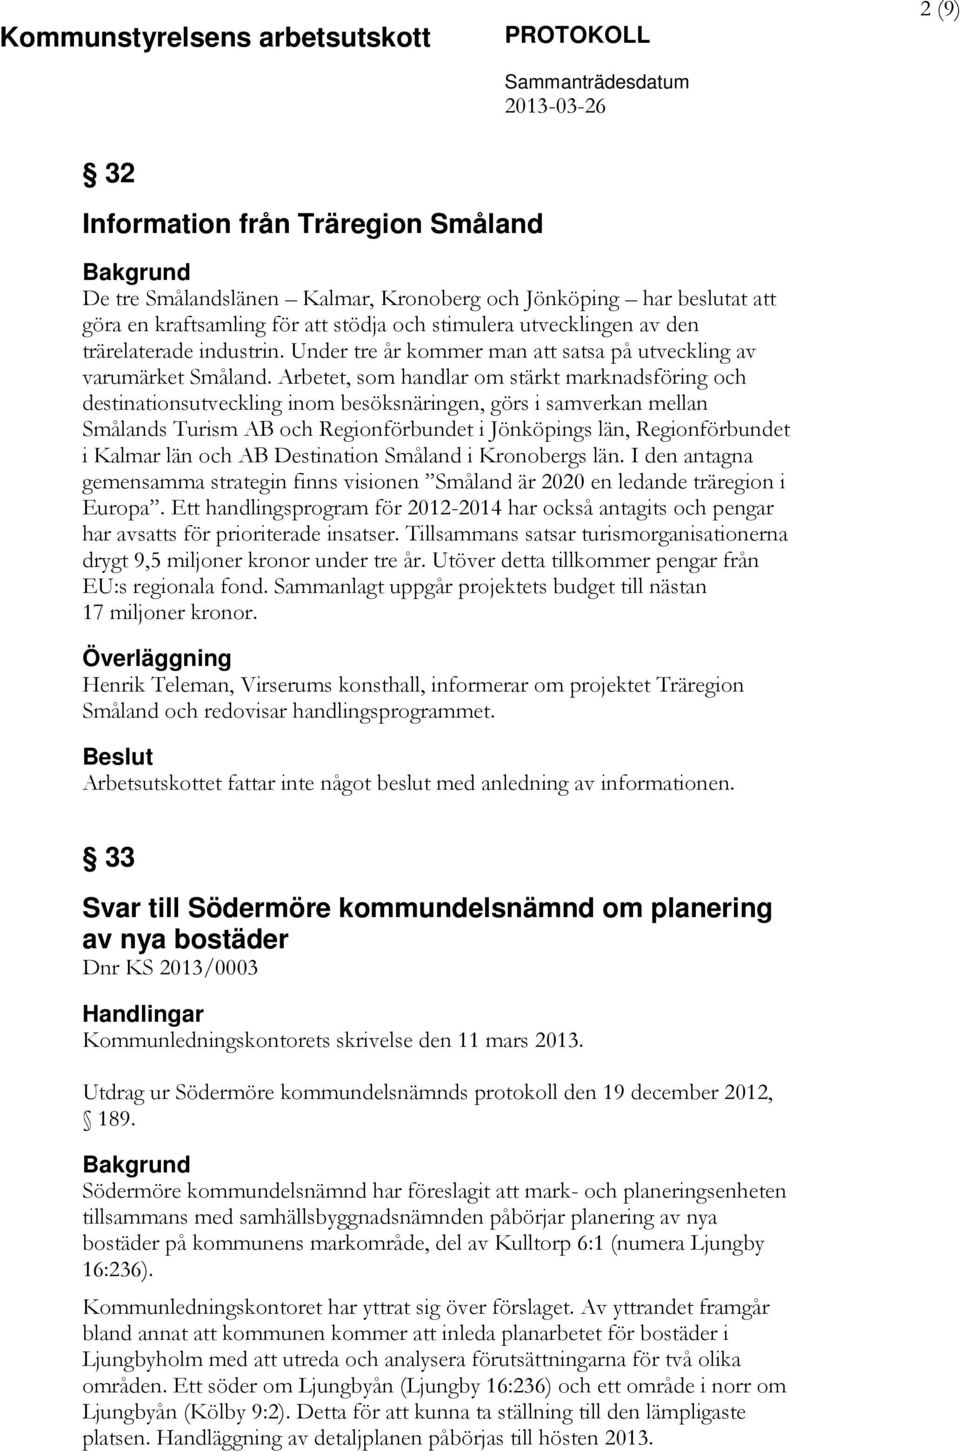 Arbetet, som handlar om stärkt marknadsföring och destinationsutveckling inom besöksnäringen, görs i samverkan mellan Smålands Turism AB och Regionförbundet i Jönköpings län, Regionförbundet i Kalmar